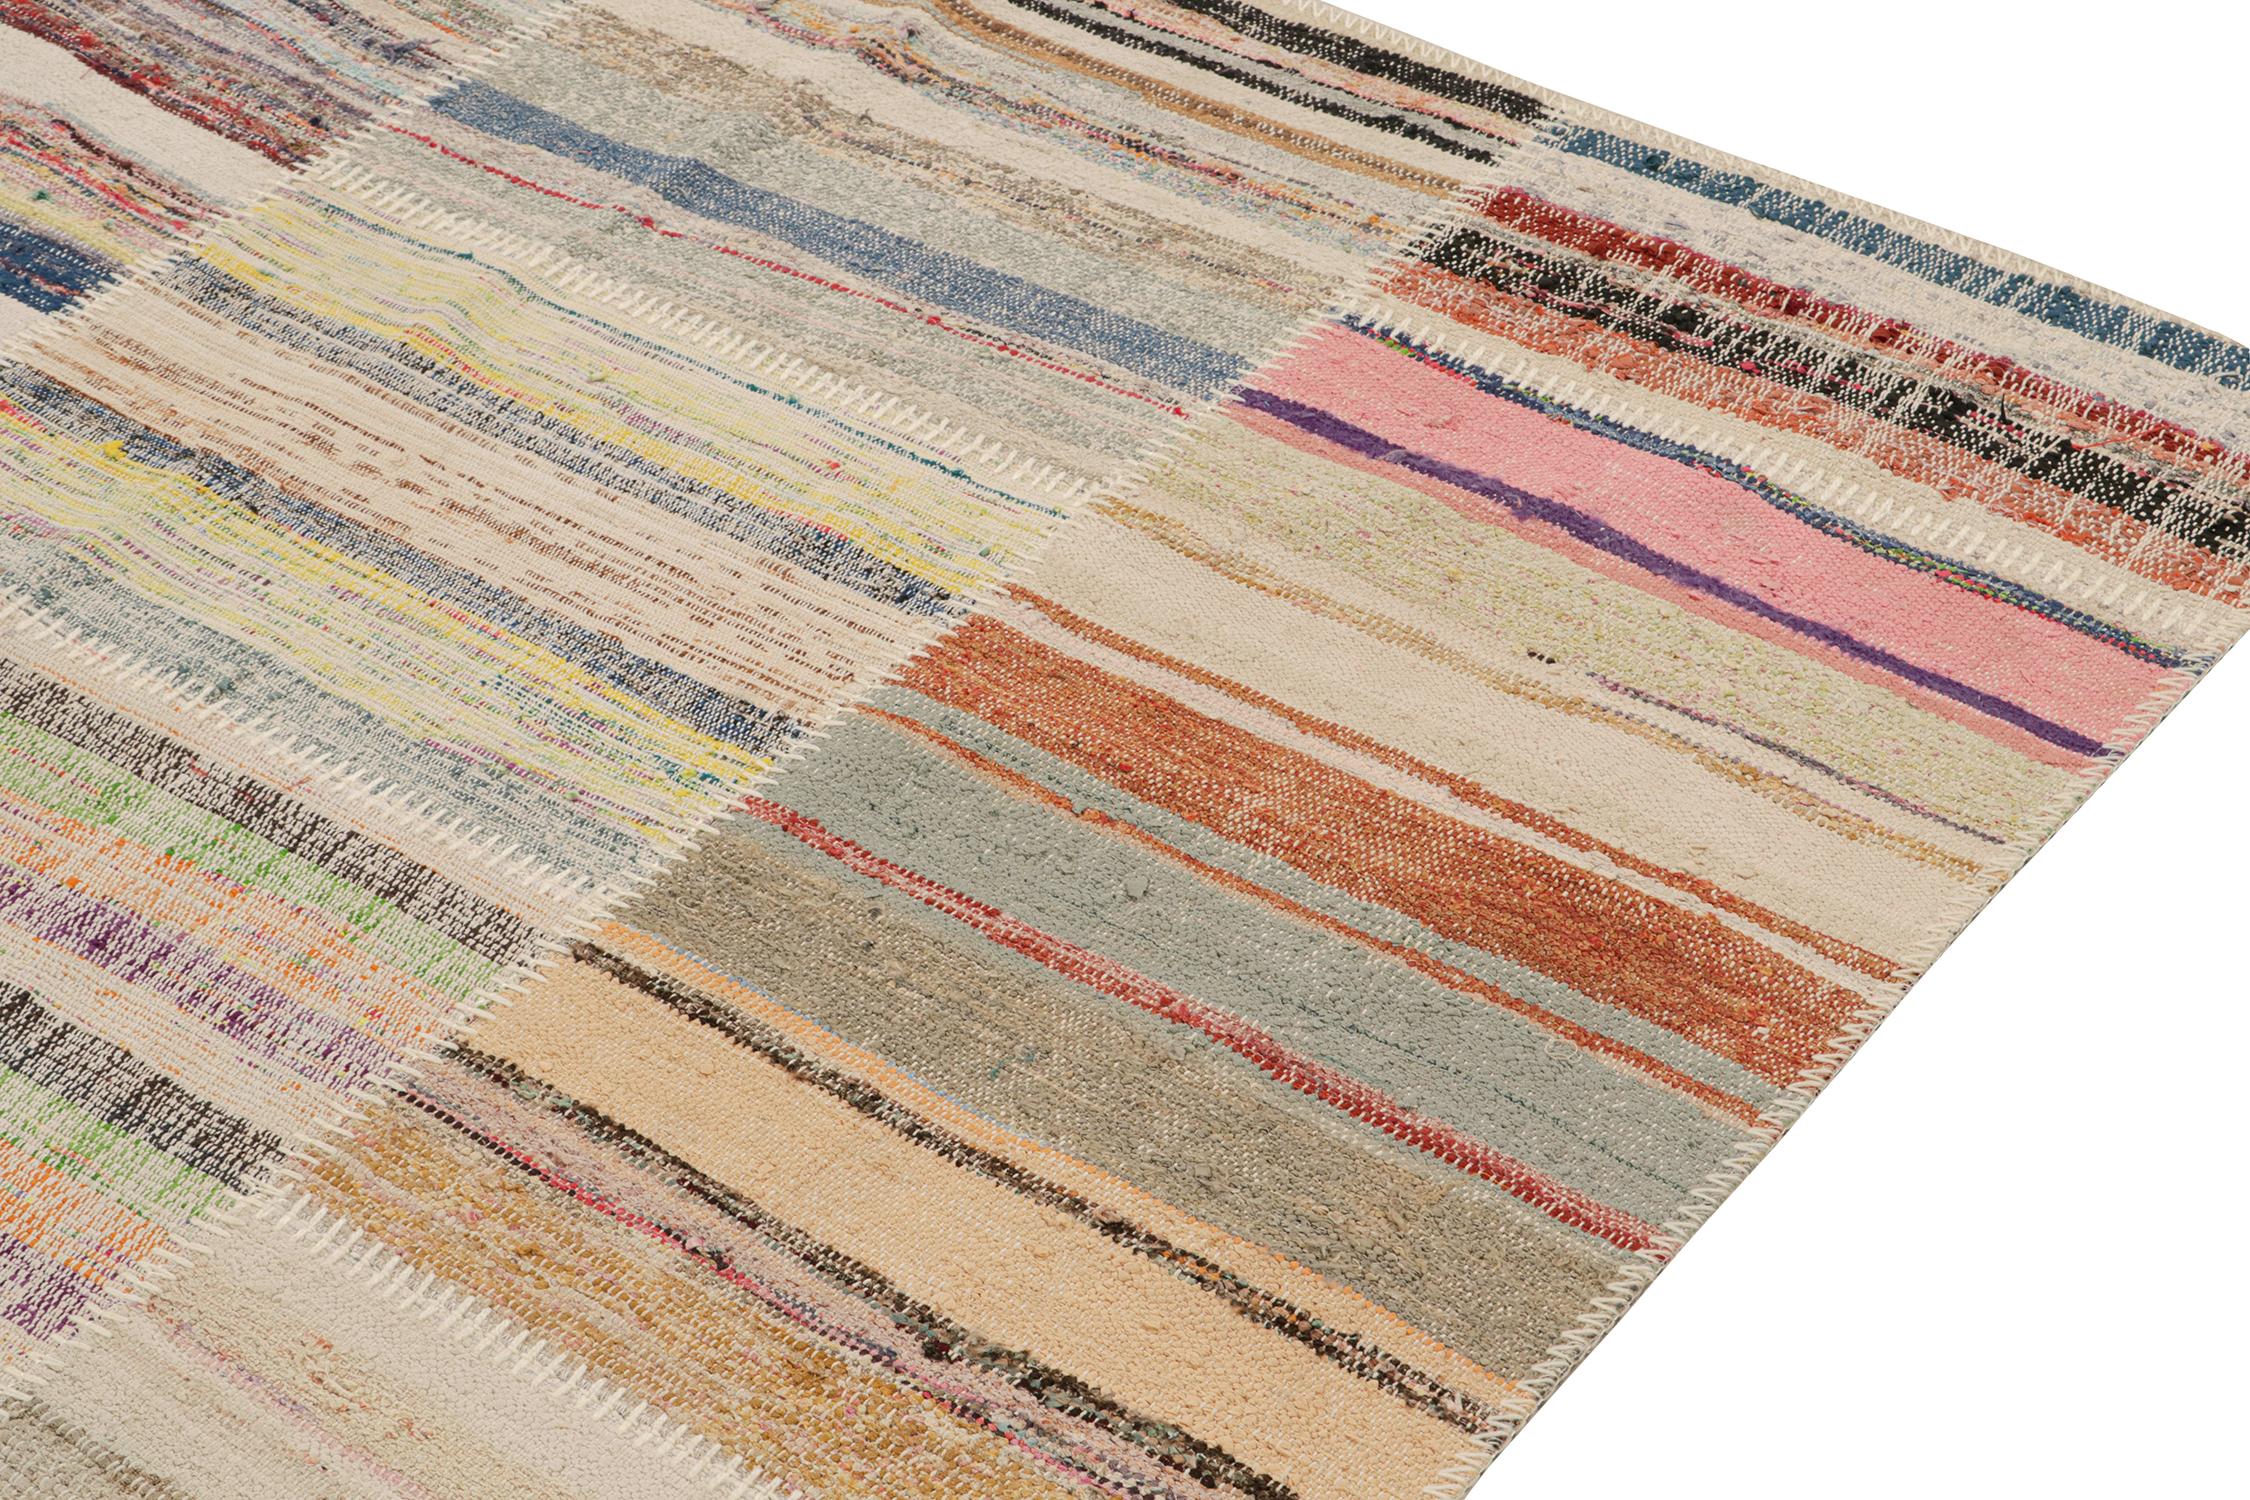 Patchwork-Kilim-Teppich von Rug & Kilim in mehrfarbigen Streifen (Handgeknüpft)